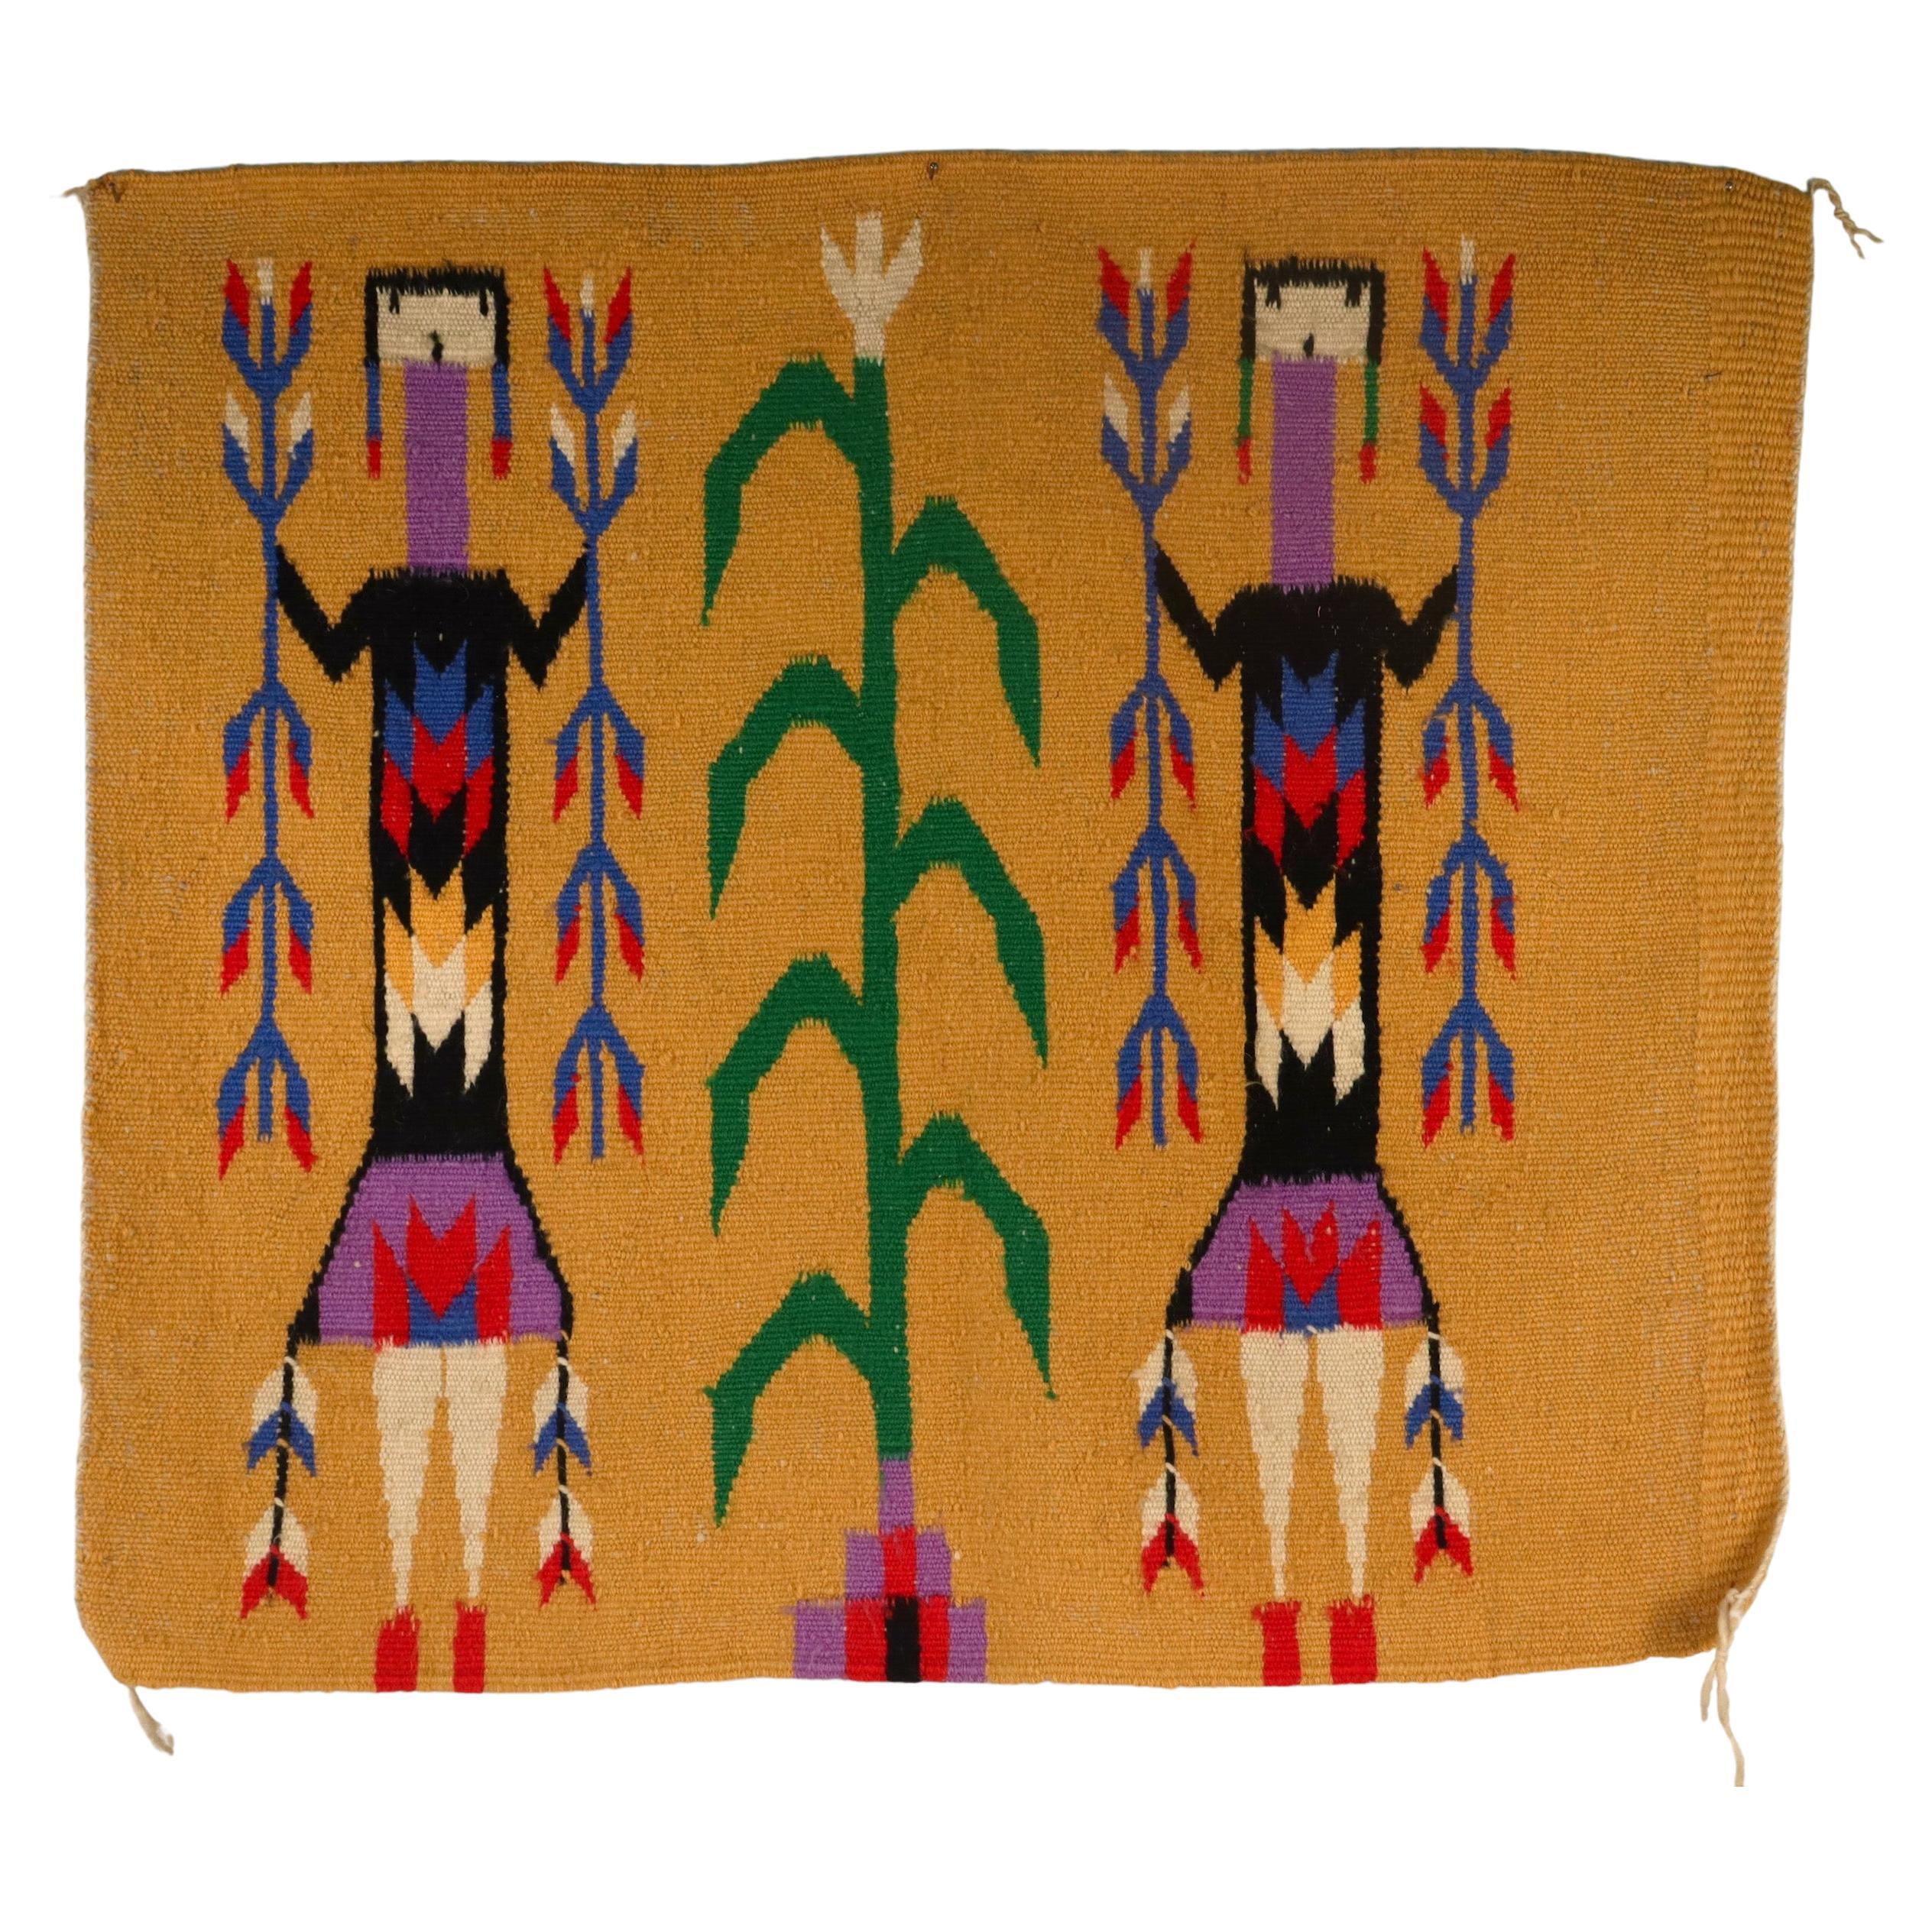 Vintage Yei Pictoral Navajo Wool Tapestry or Carpet Weaving with Corn People